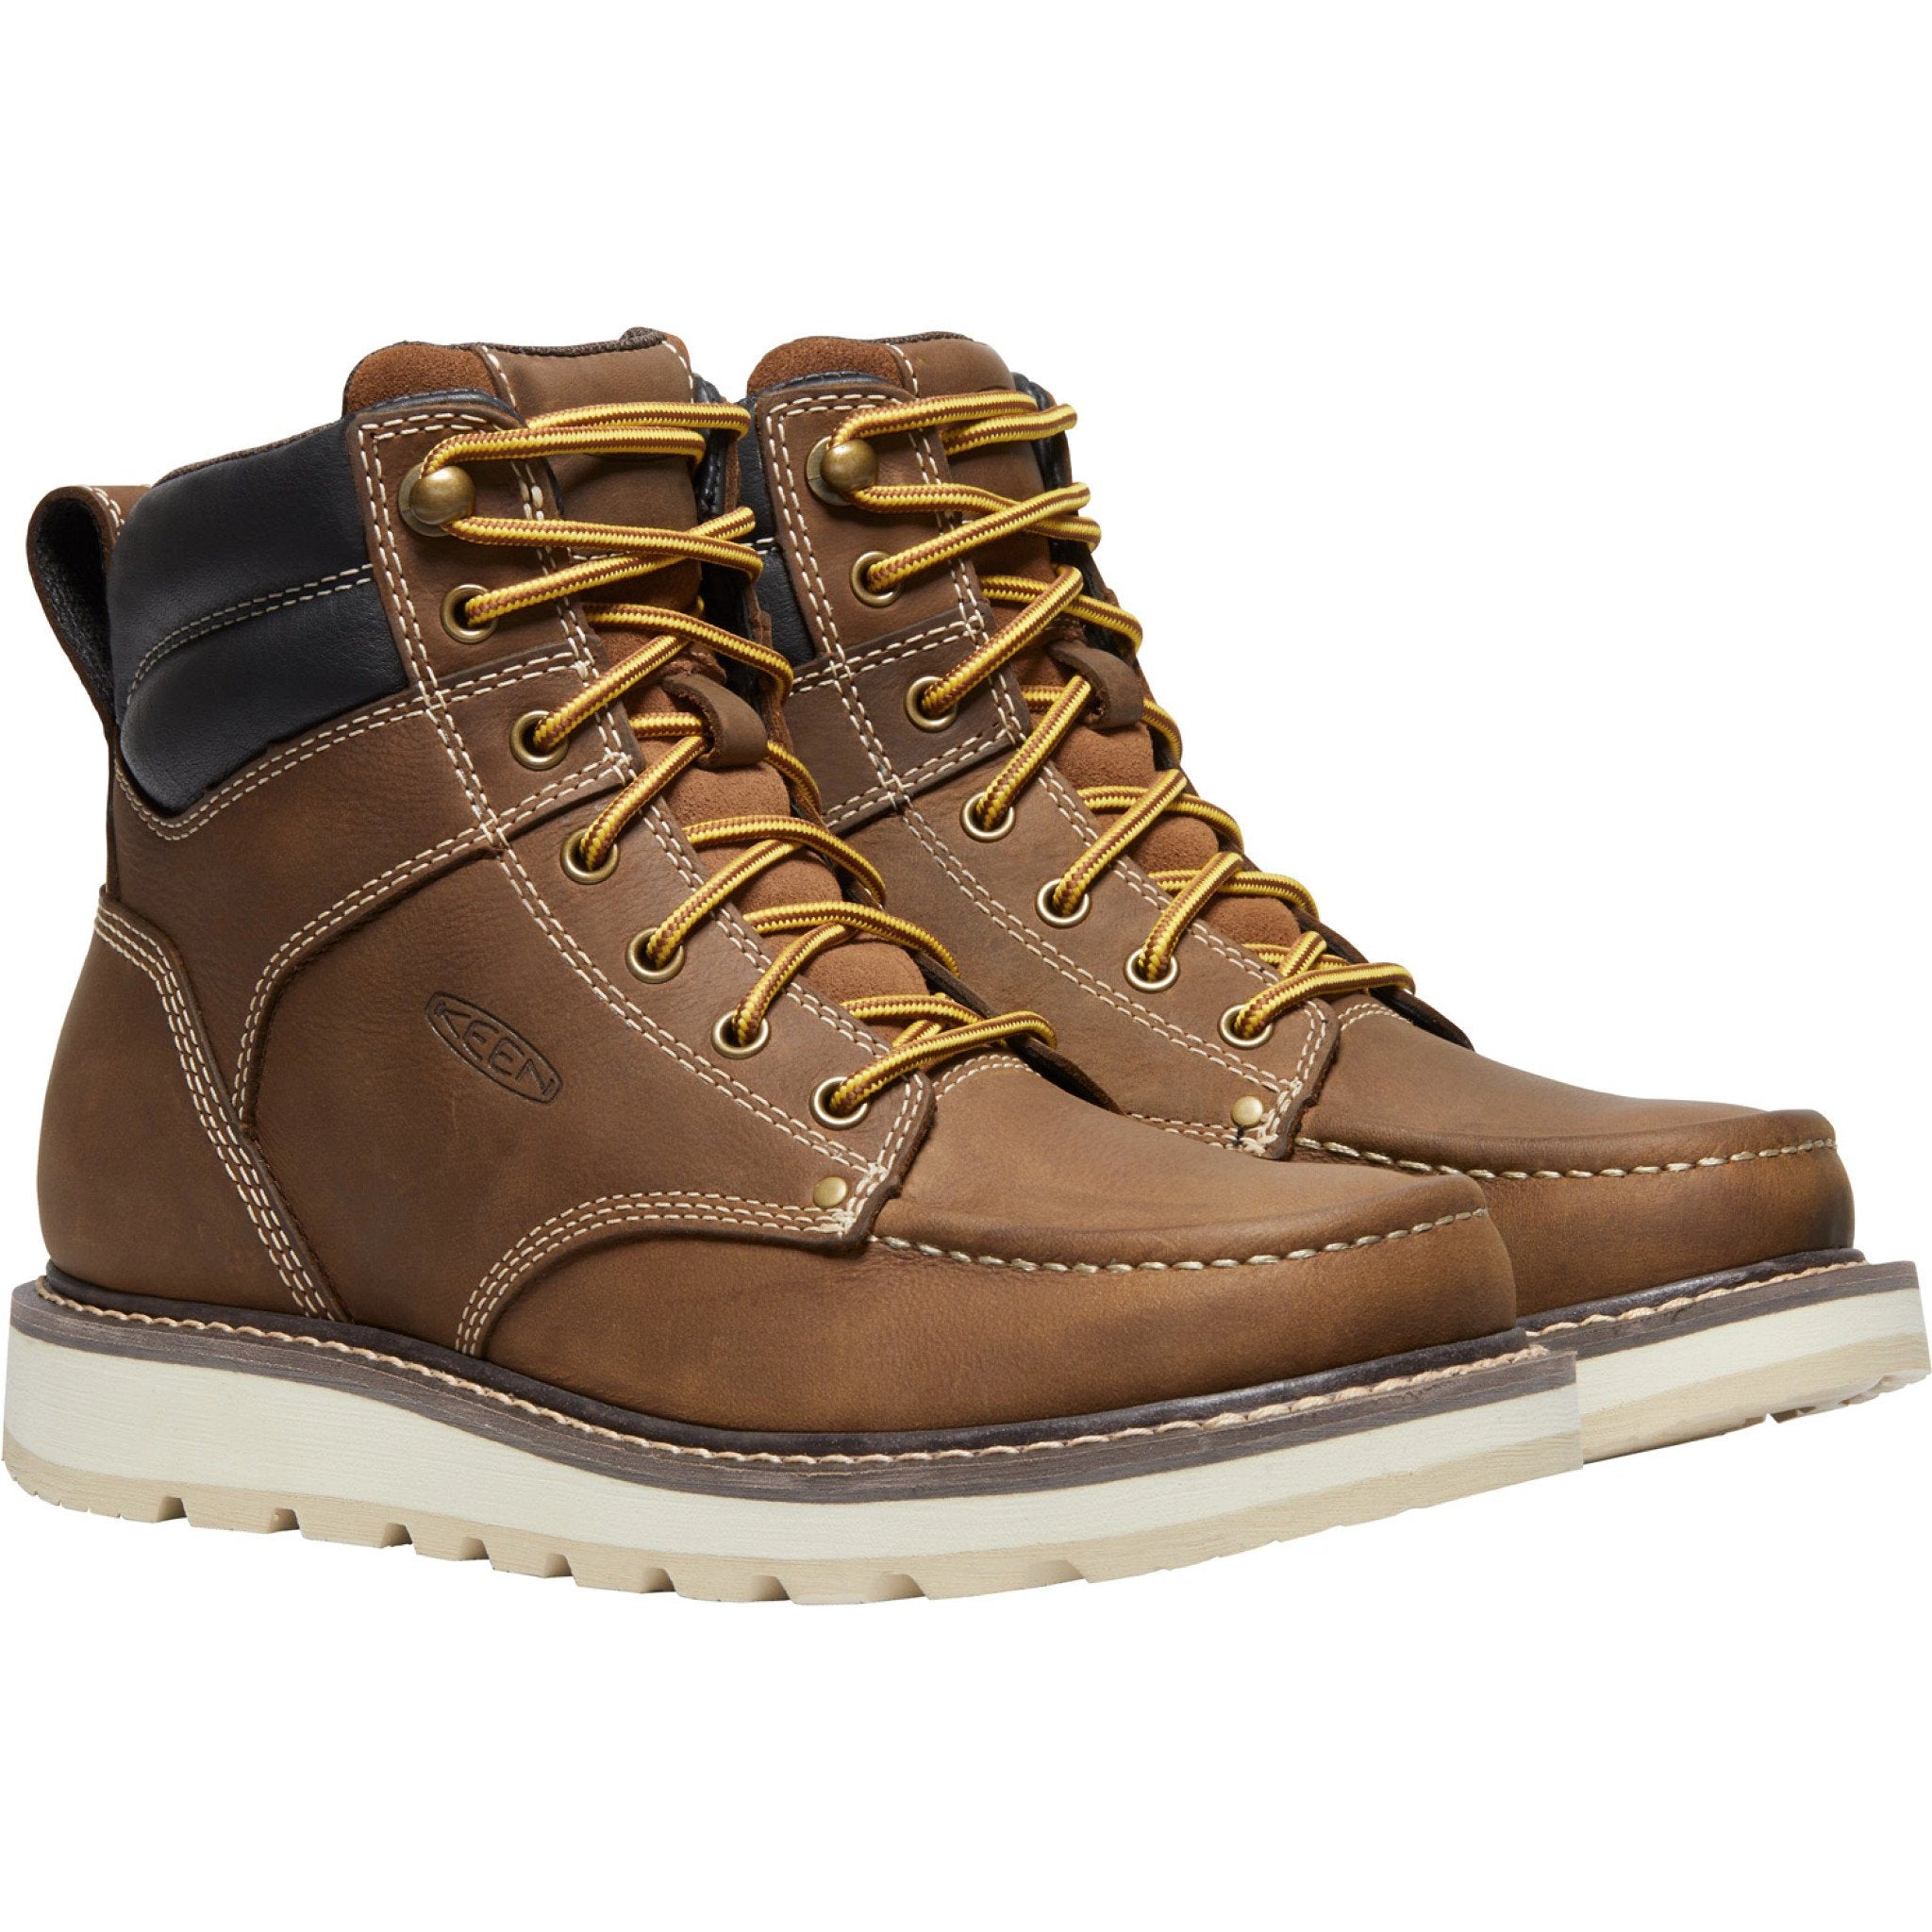 Keen Utility Men's Cincinnati 6" Soft Toe Wedge Work Boot - 1025614 7 / Medium / Brown - Overlook Boots